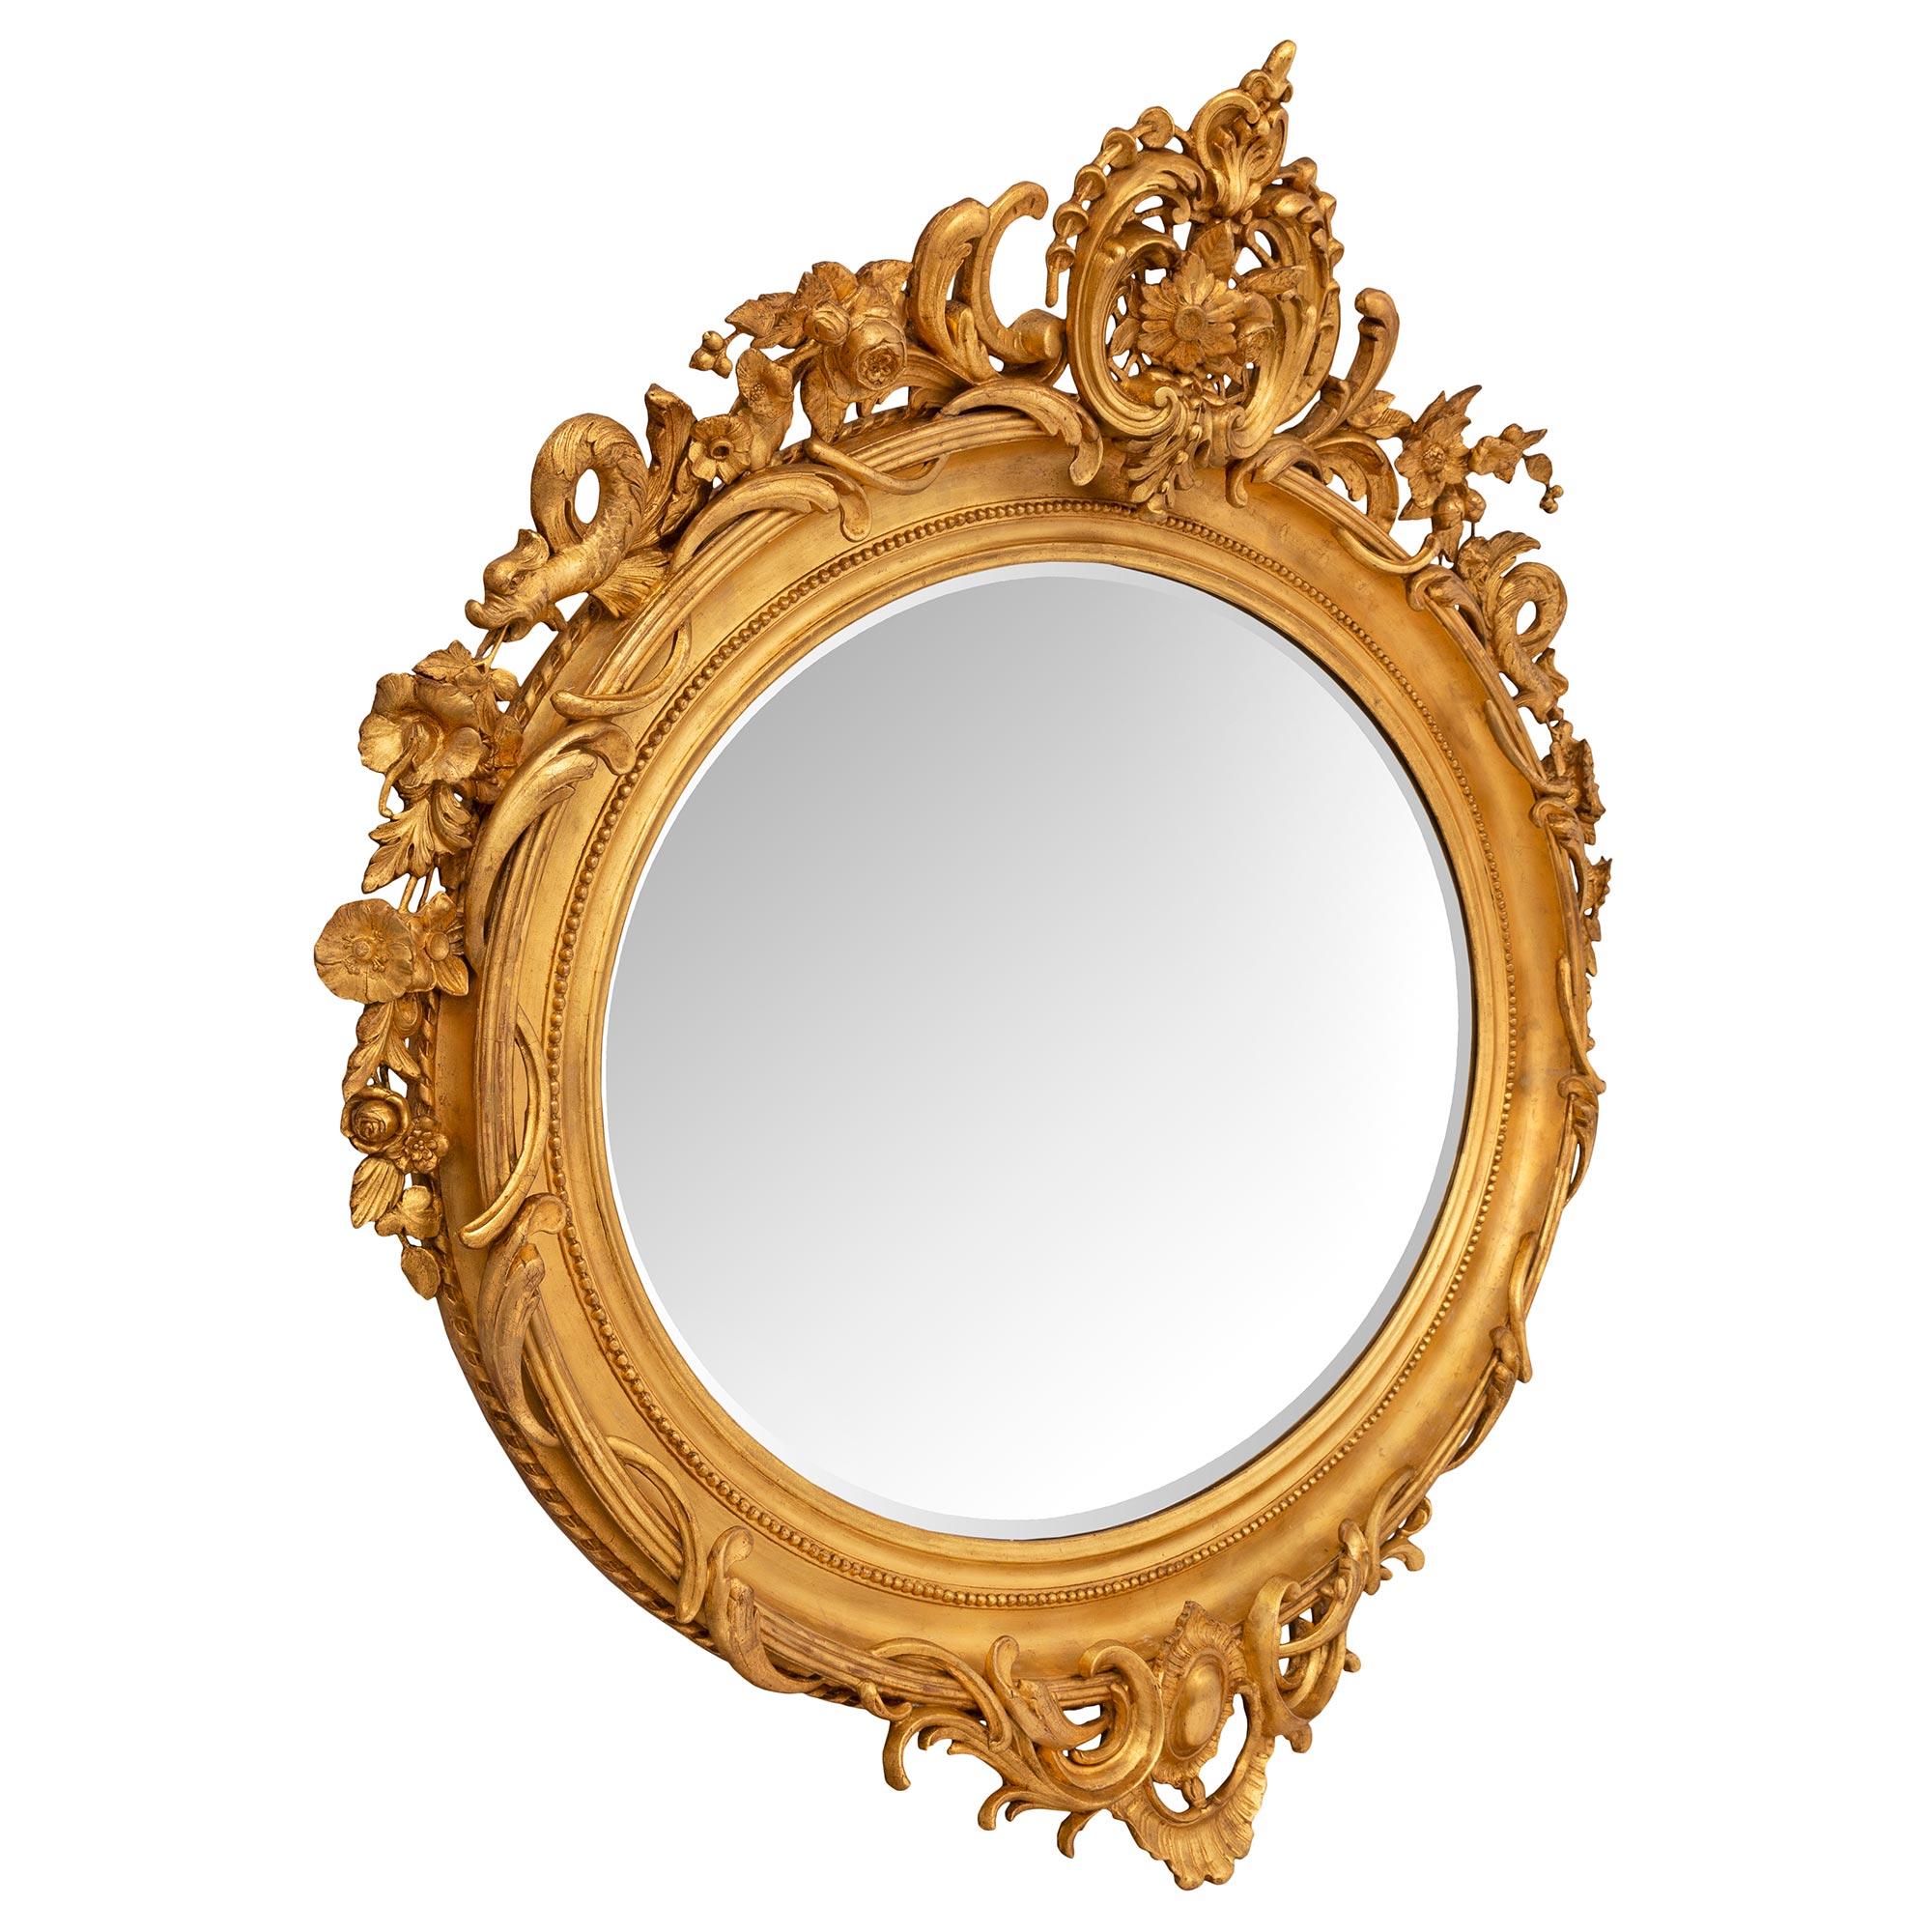 Ein auffälliger und beeindruckender französischer Vergoldungsspiegel im Stil Louis XVI des 19. Der großformatige, ovale Spiegel behält seine ursprüngliche, abgeschrägte Spiegelplatte, die in einen gesprenkelten Goldholzrahmen mit einem feinen,